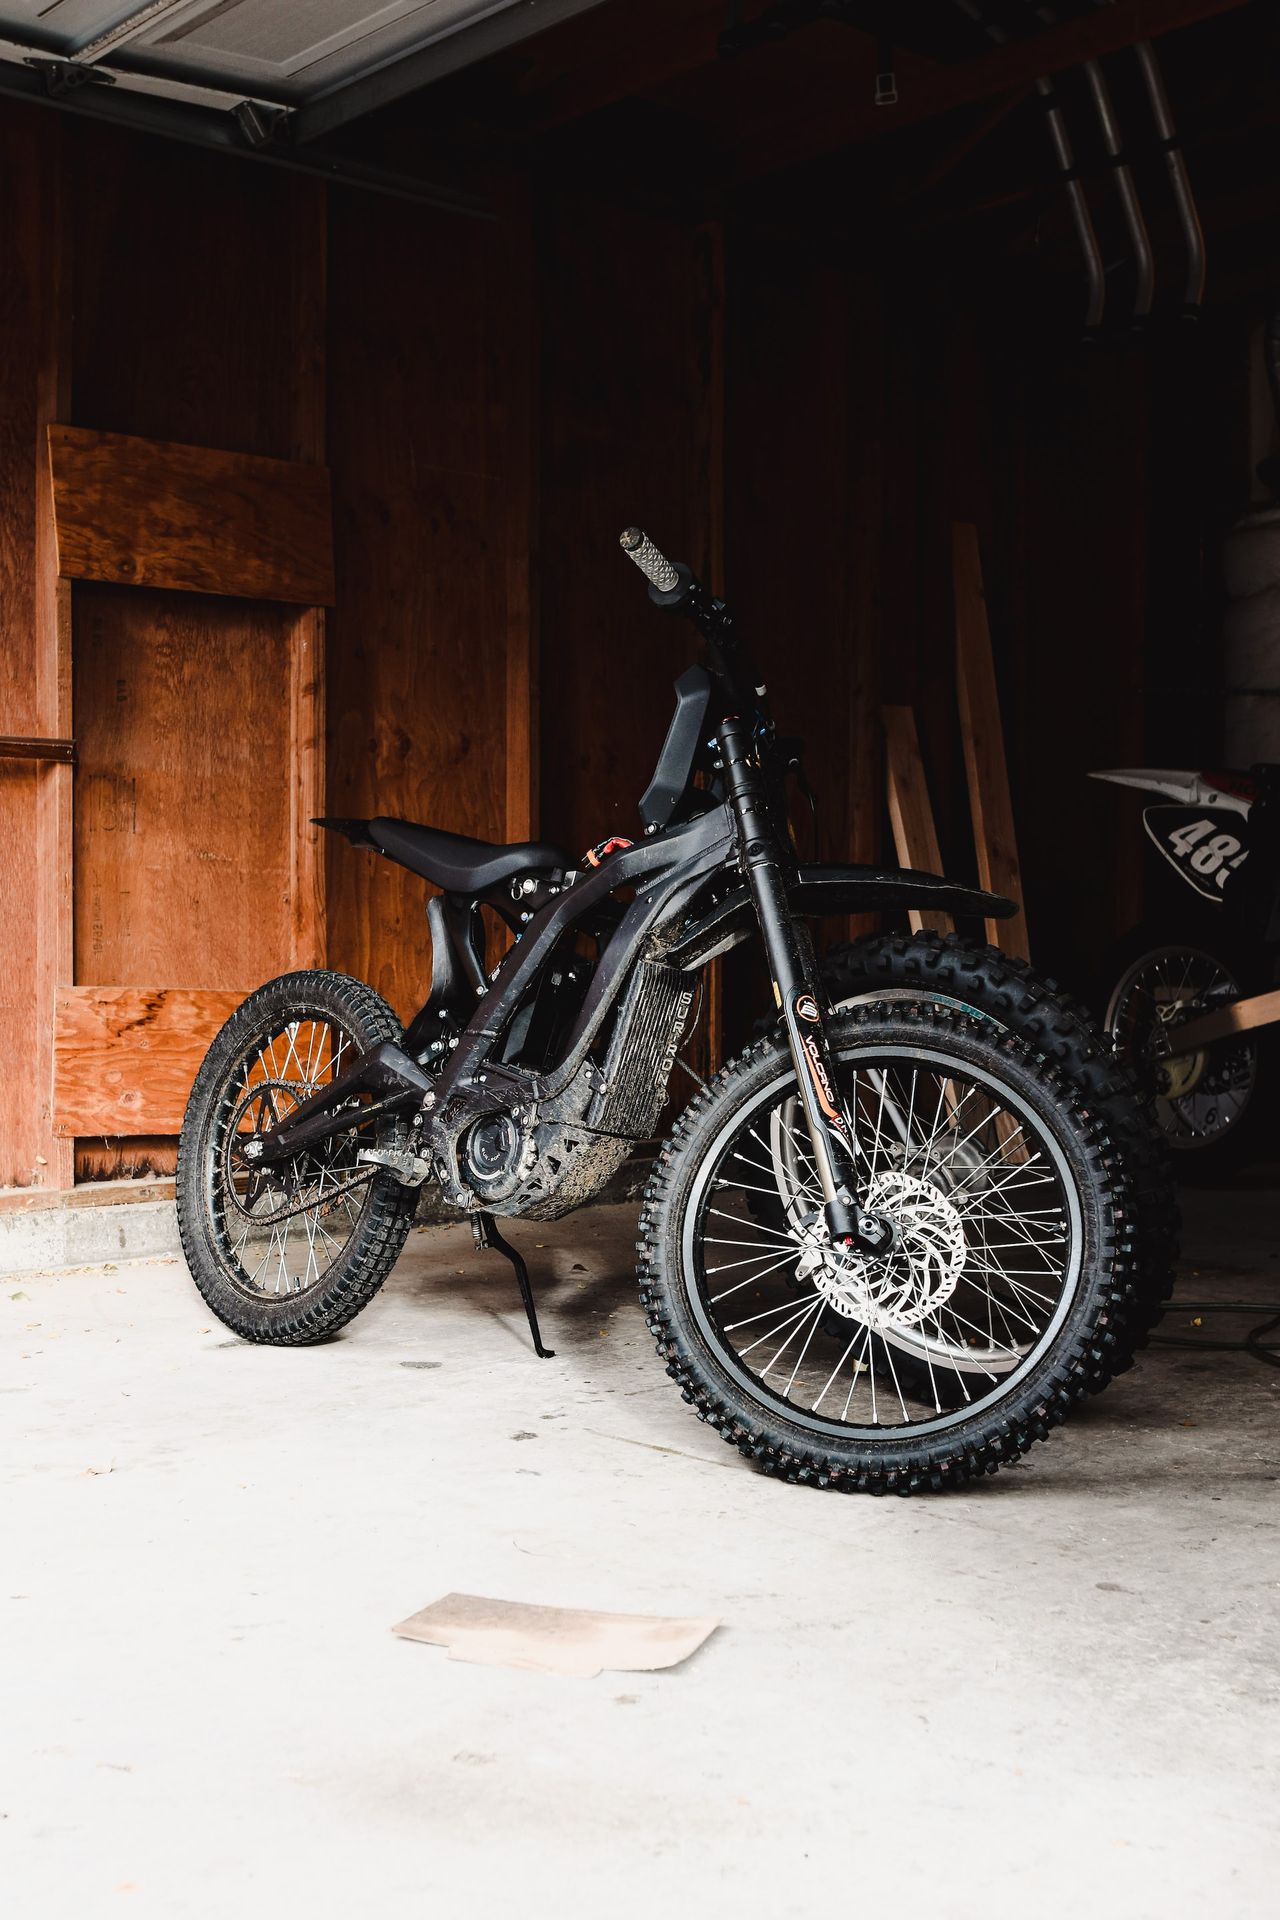 a dirt bike parked inside of a garage